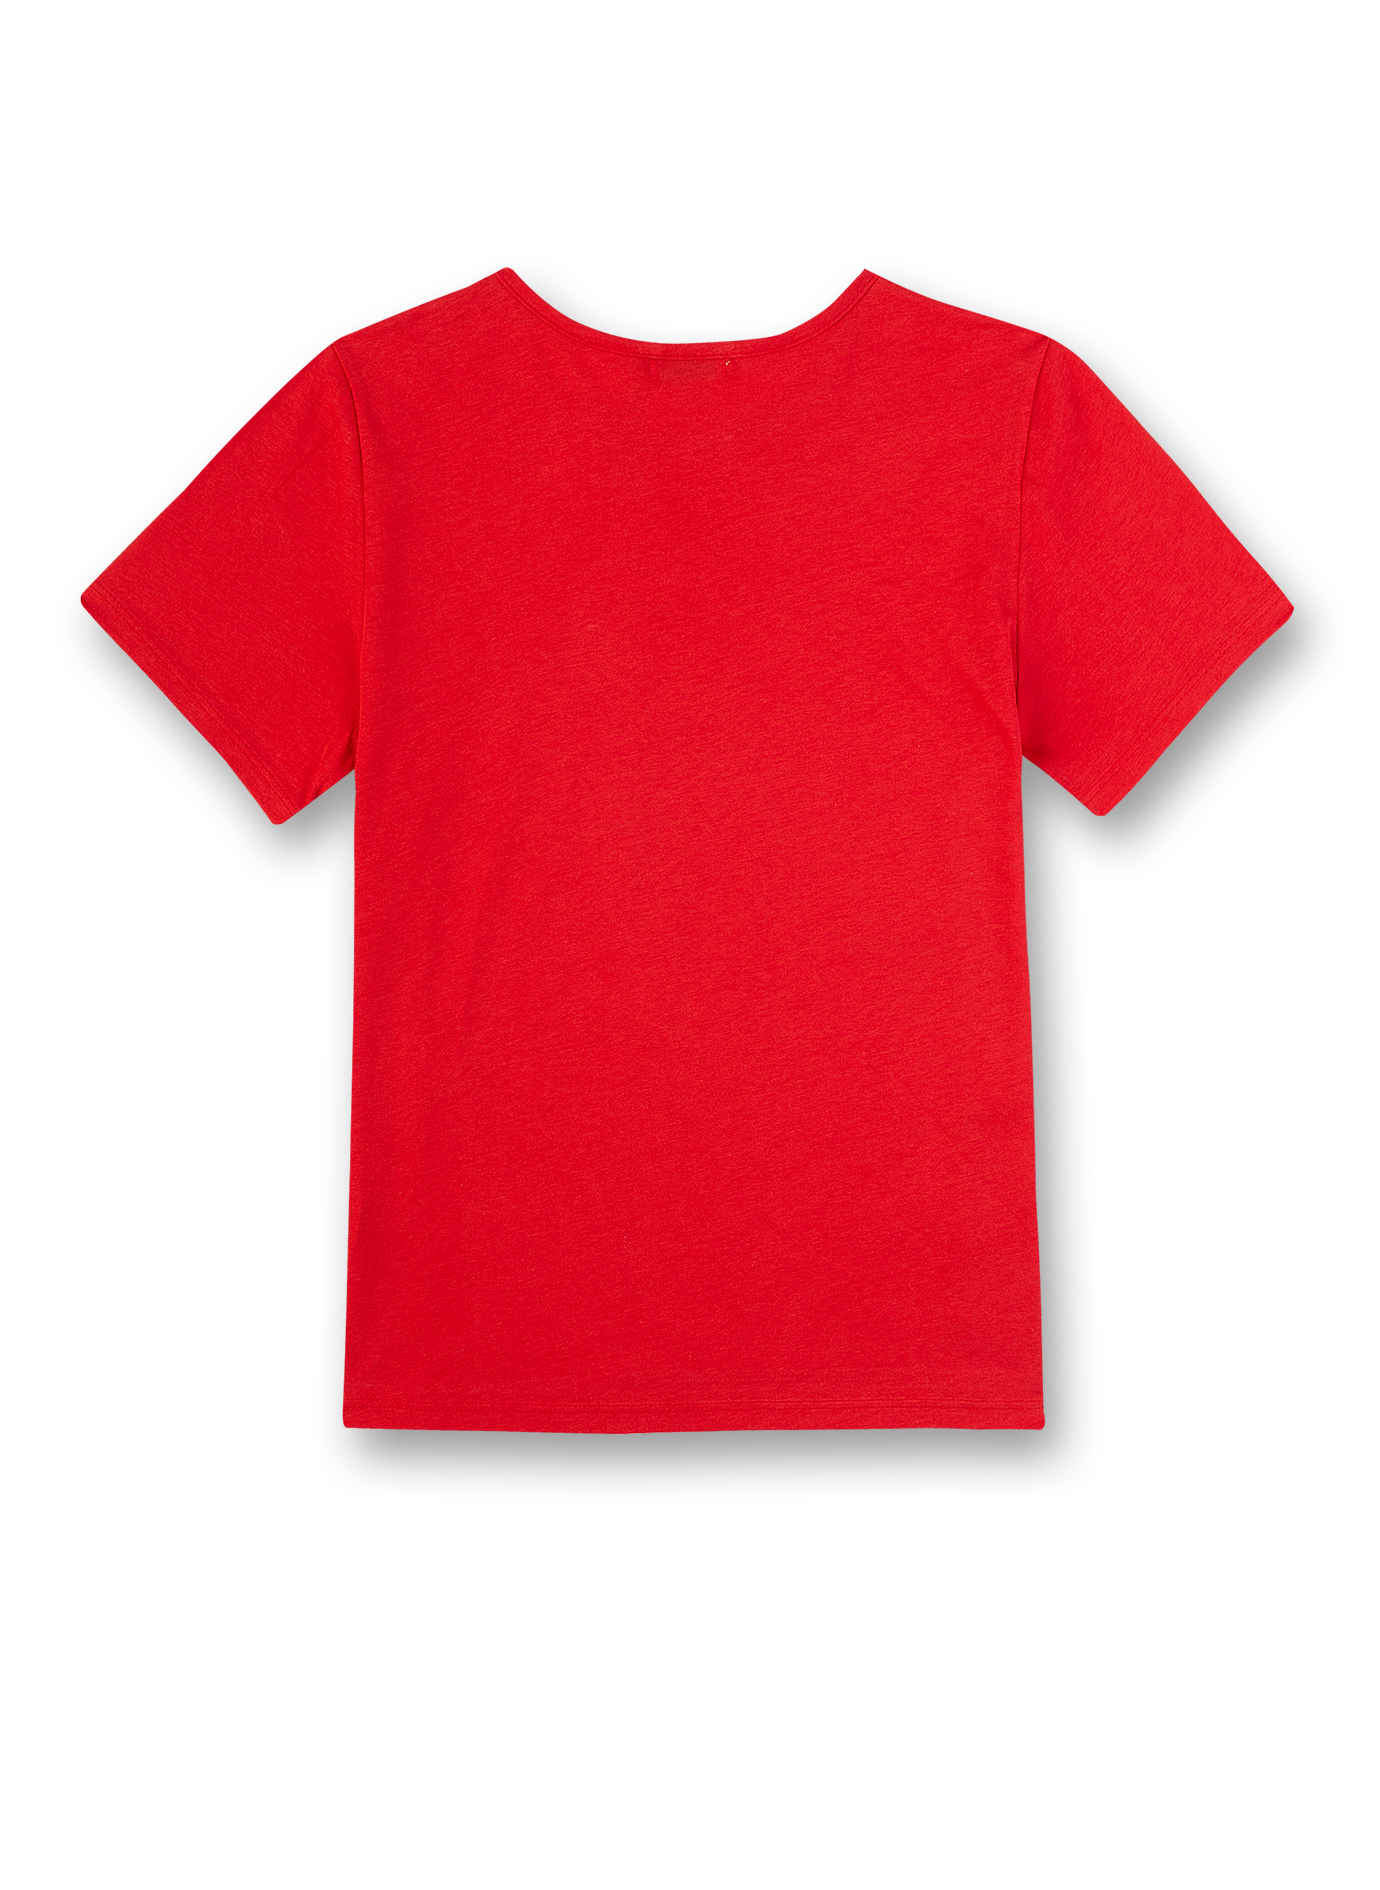 Mädchen-Shirt Rot